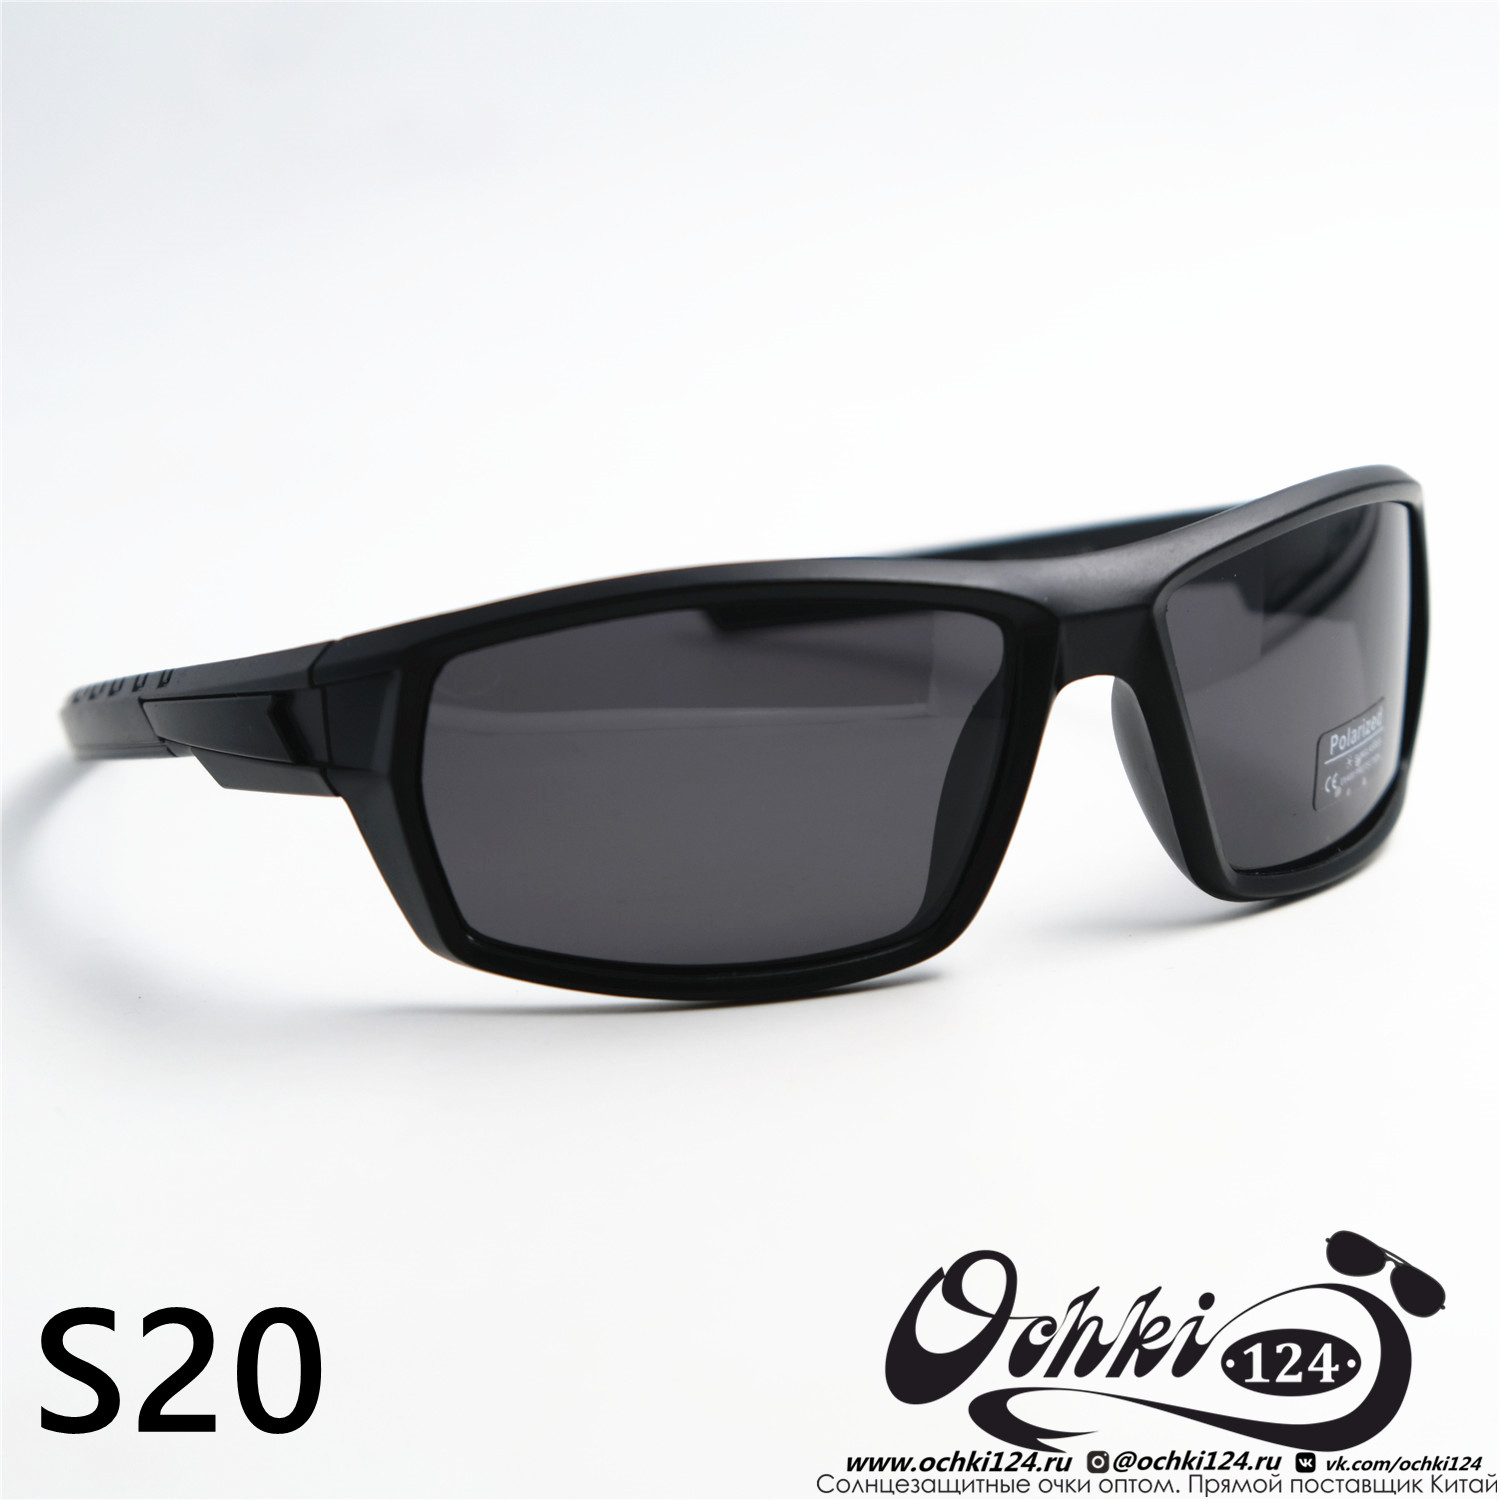  Солнцезащитные очки картинка 2023 Мужские Спорт Materice S20-C2 